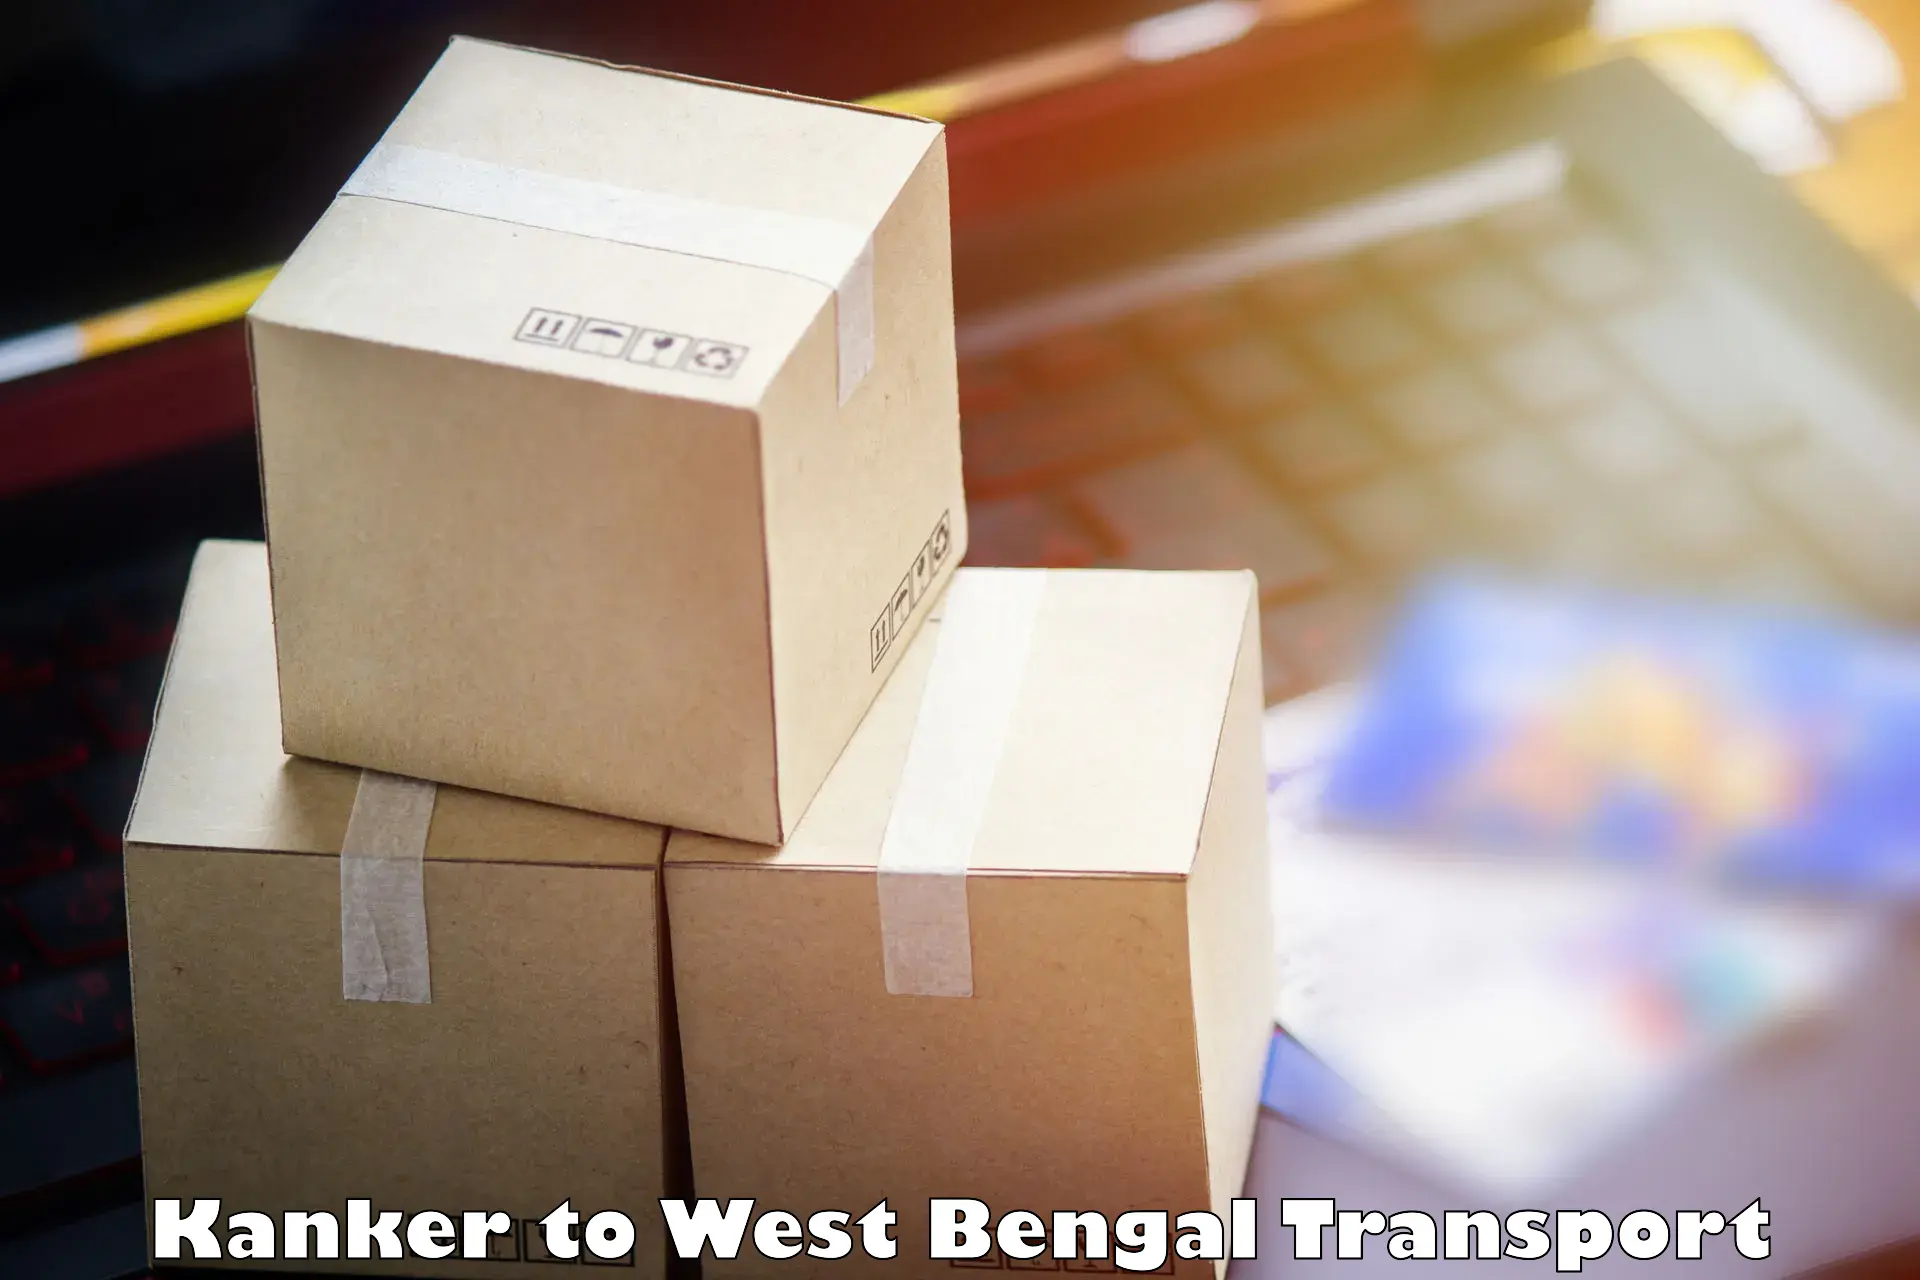 Vehicle parcel service Kanker to Barasat